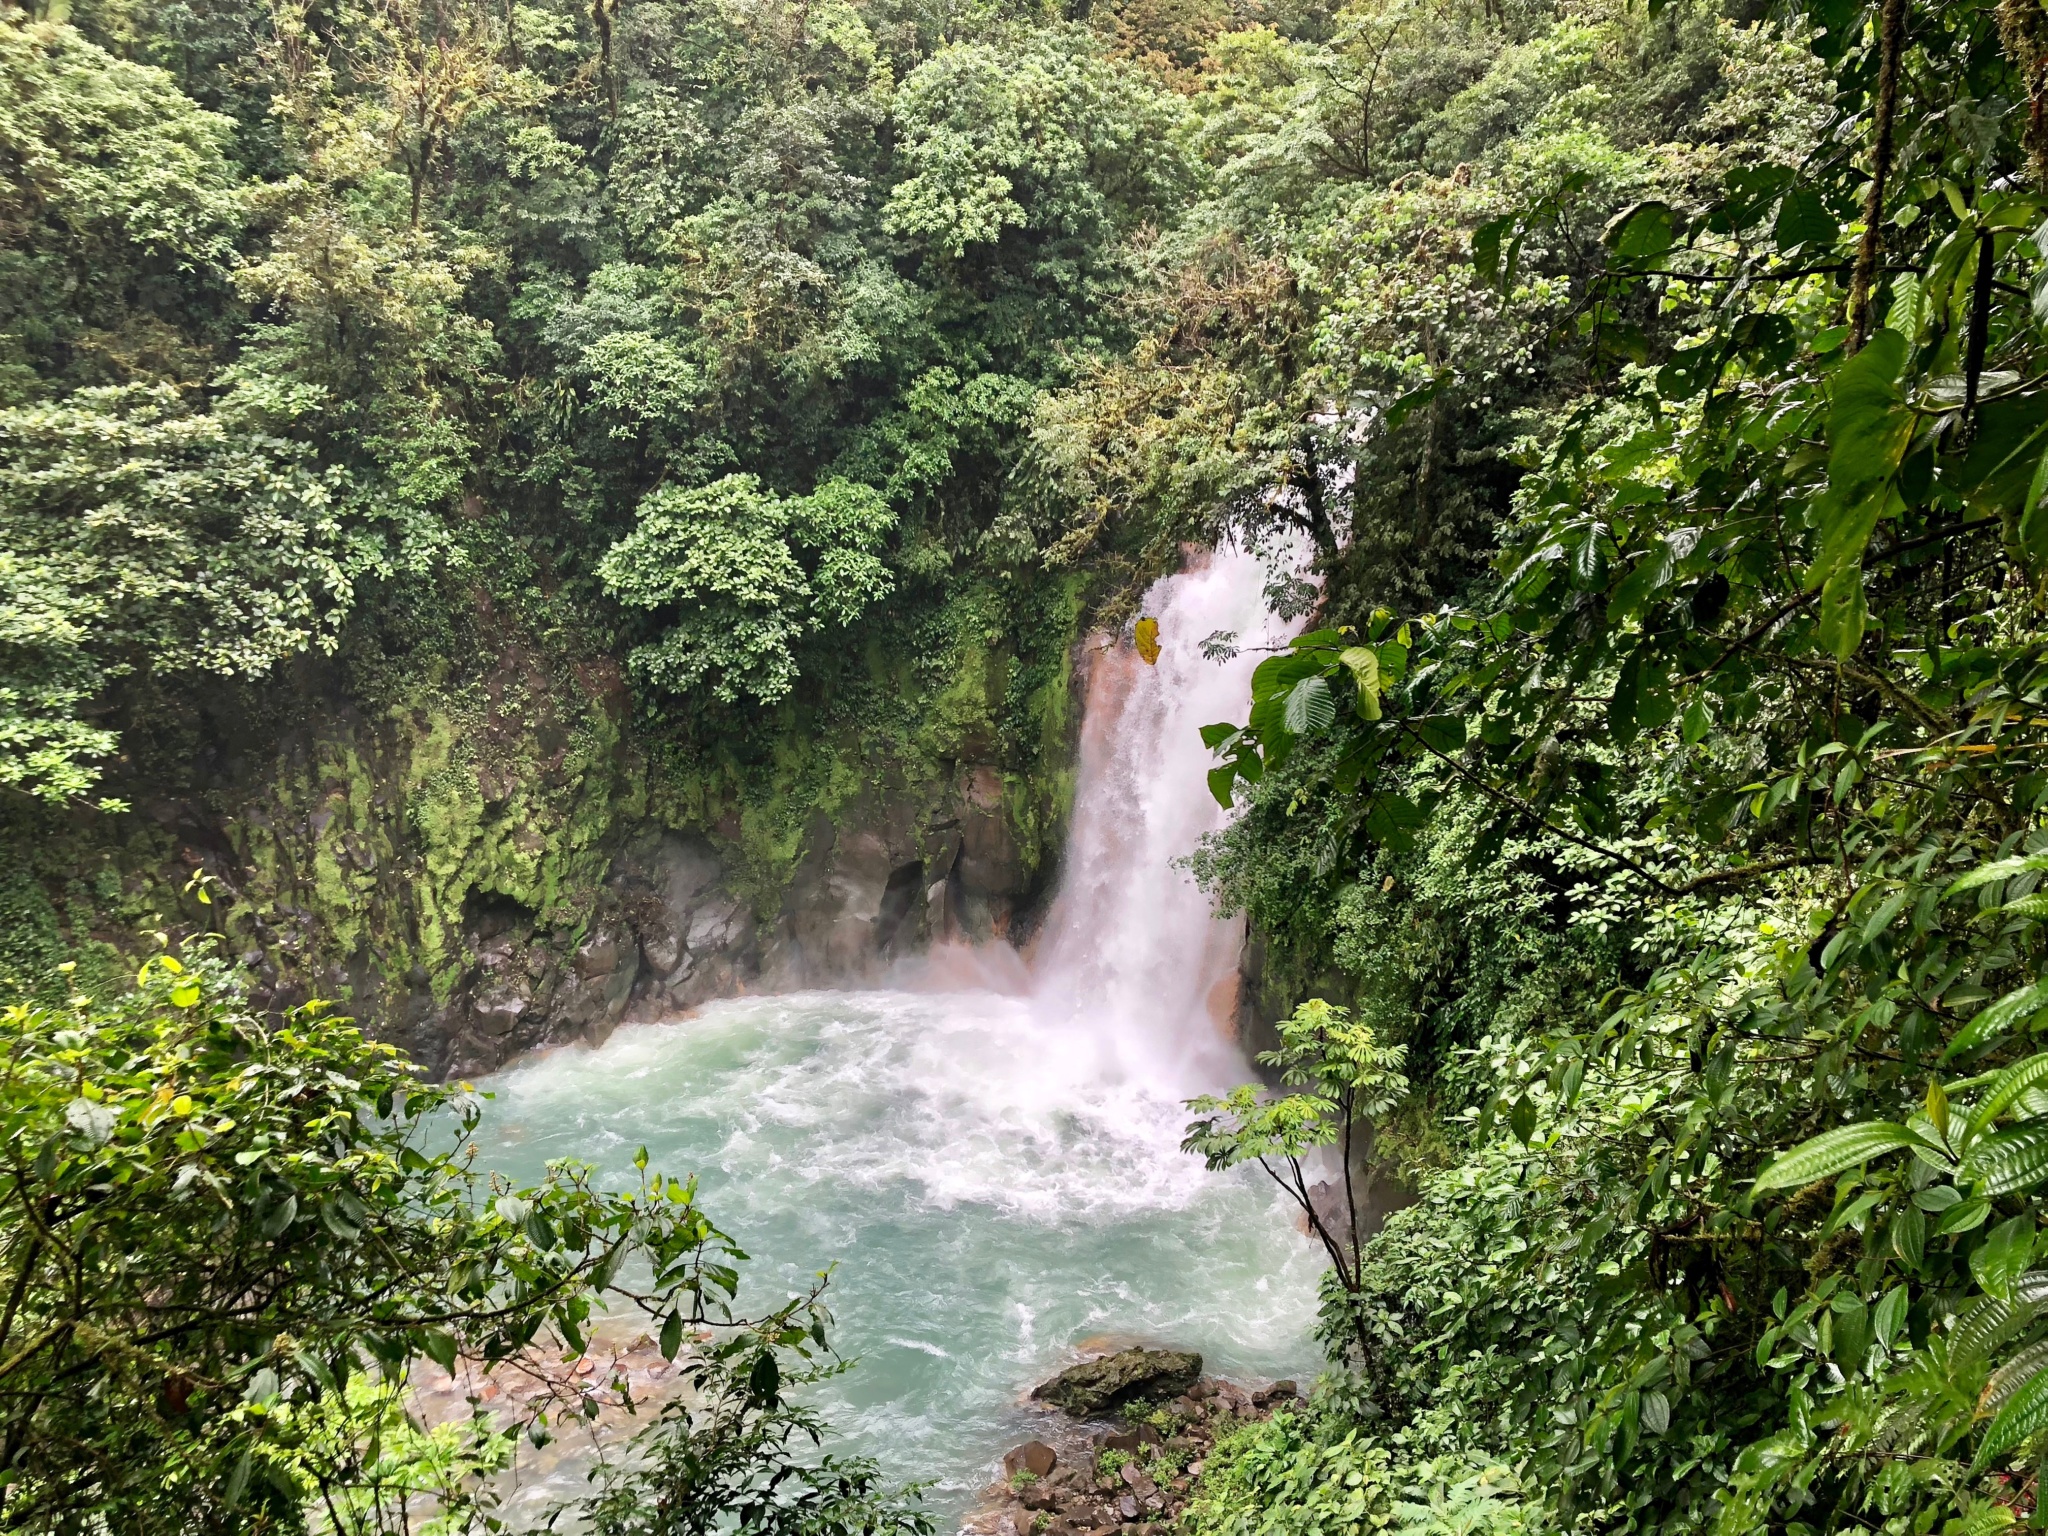 Rio Celeste waterfall in Costa Rica